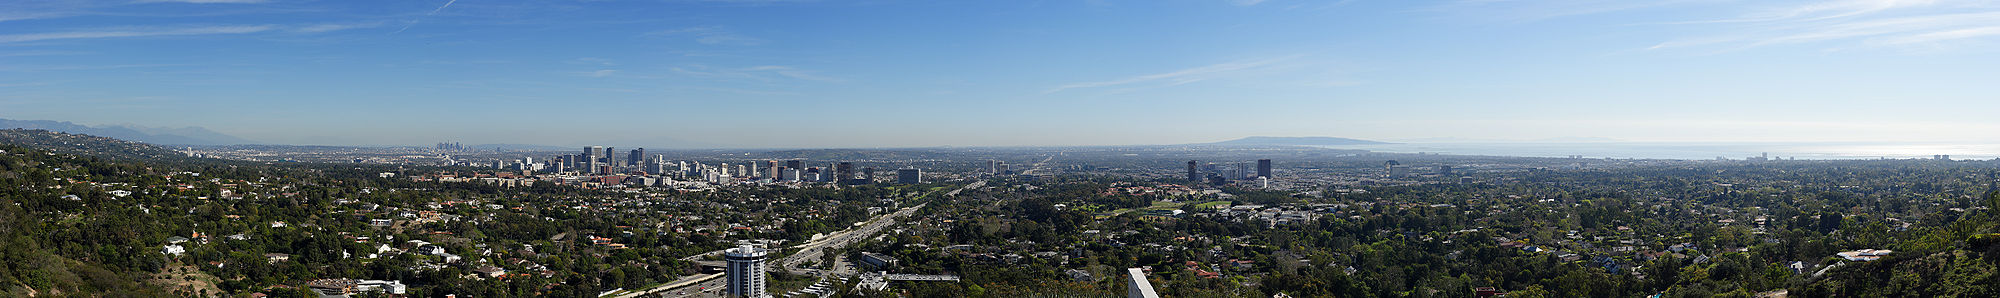 Blick vom Getty Center über Los Angeles in Richtung Süden. Die Interstate 405 ist in der Bildmitte zu sehen.